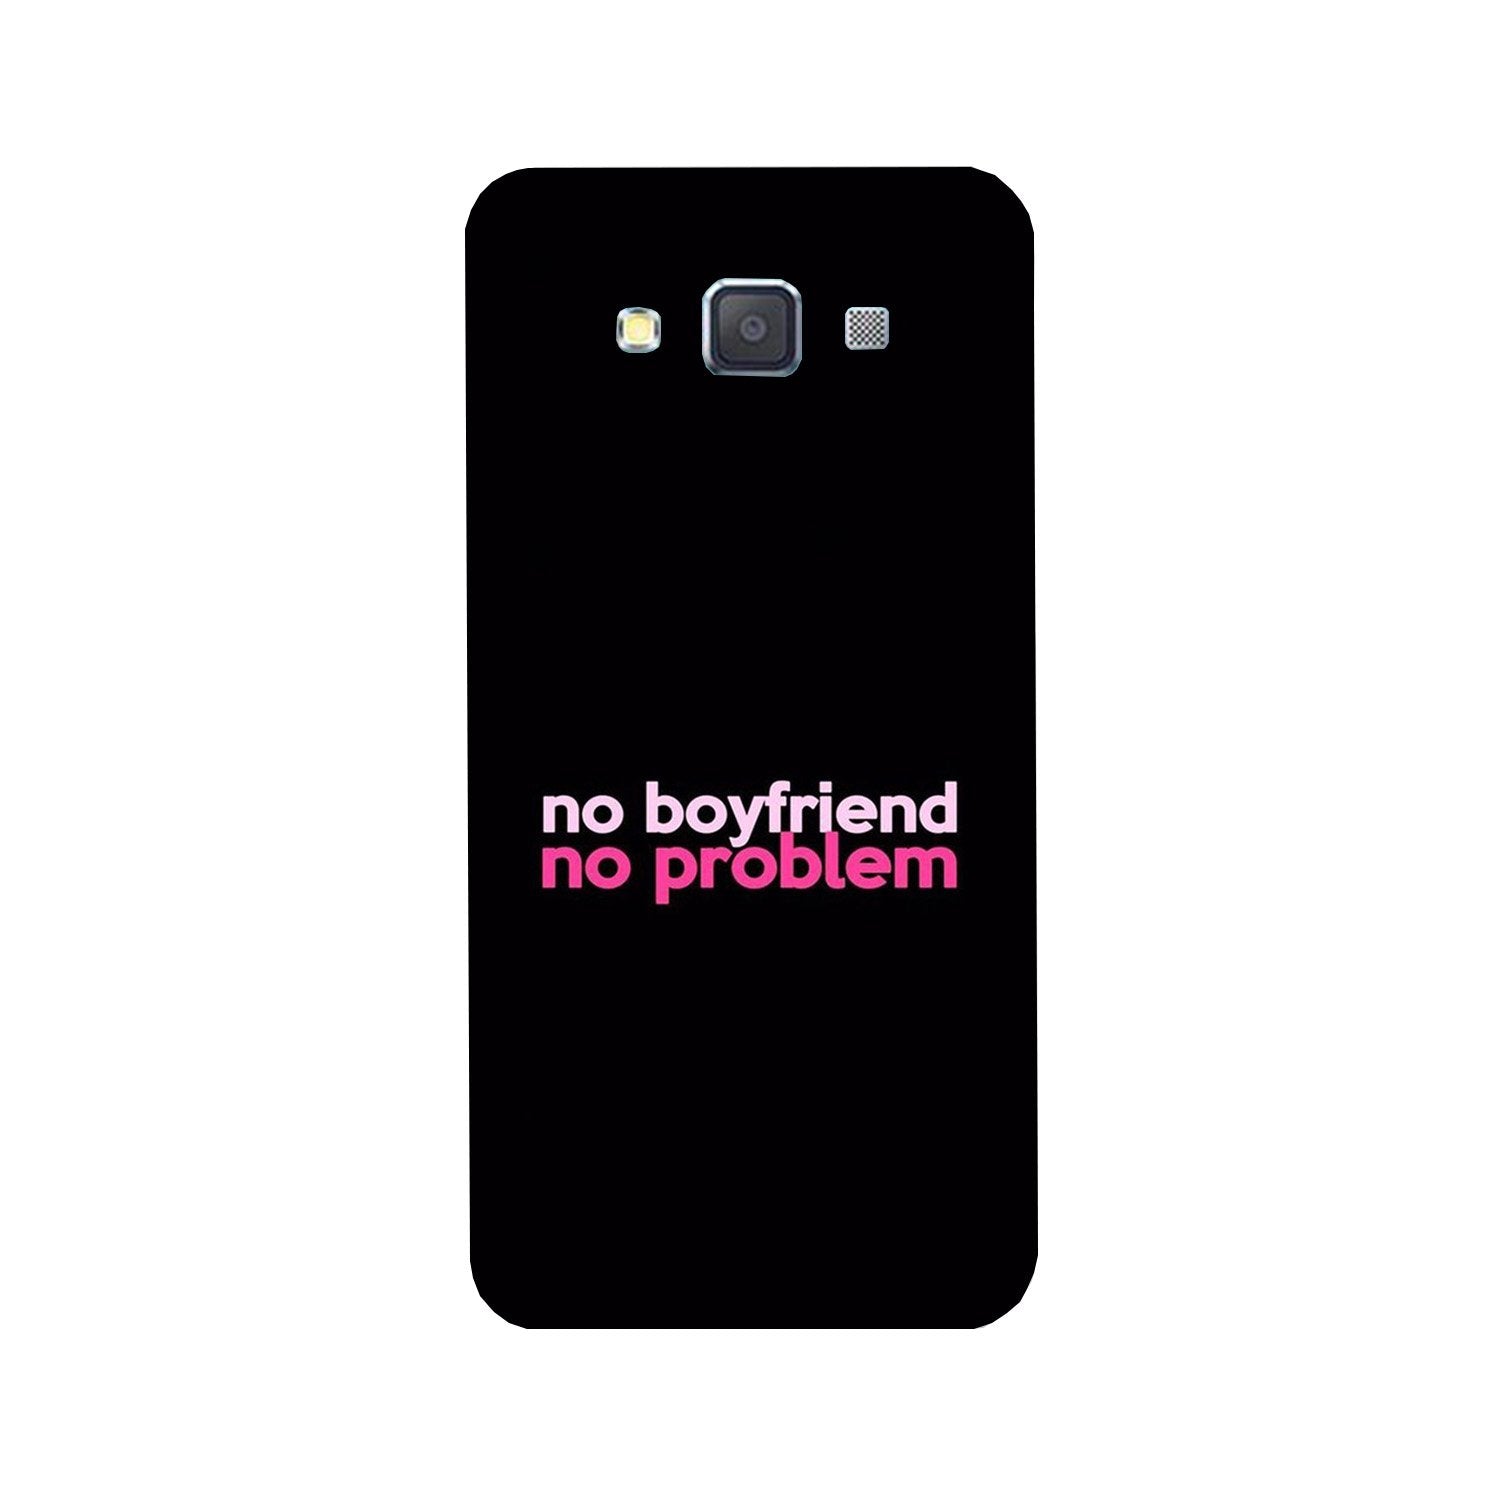 No Boyfriend No problem Case for Galaxy Grand Max  (Design - 138)